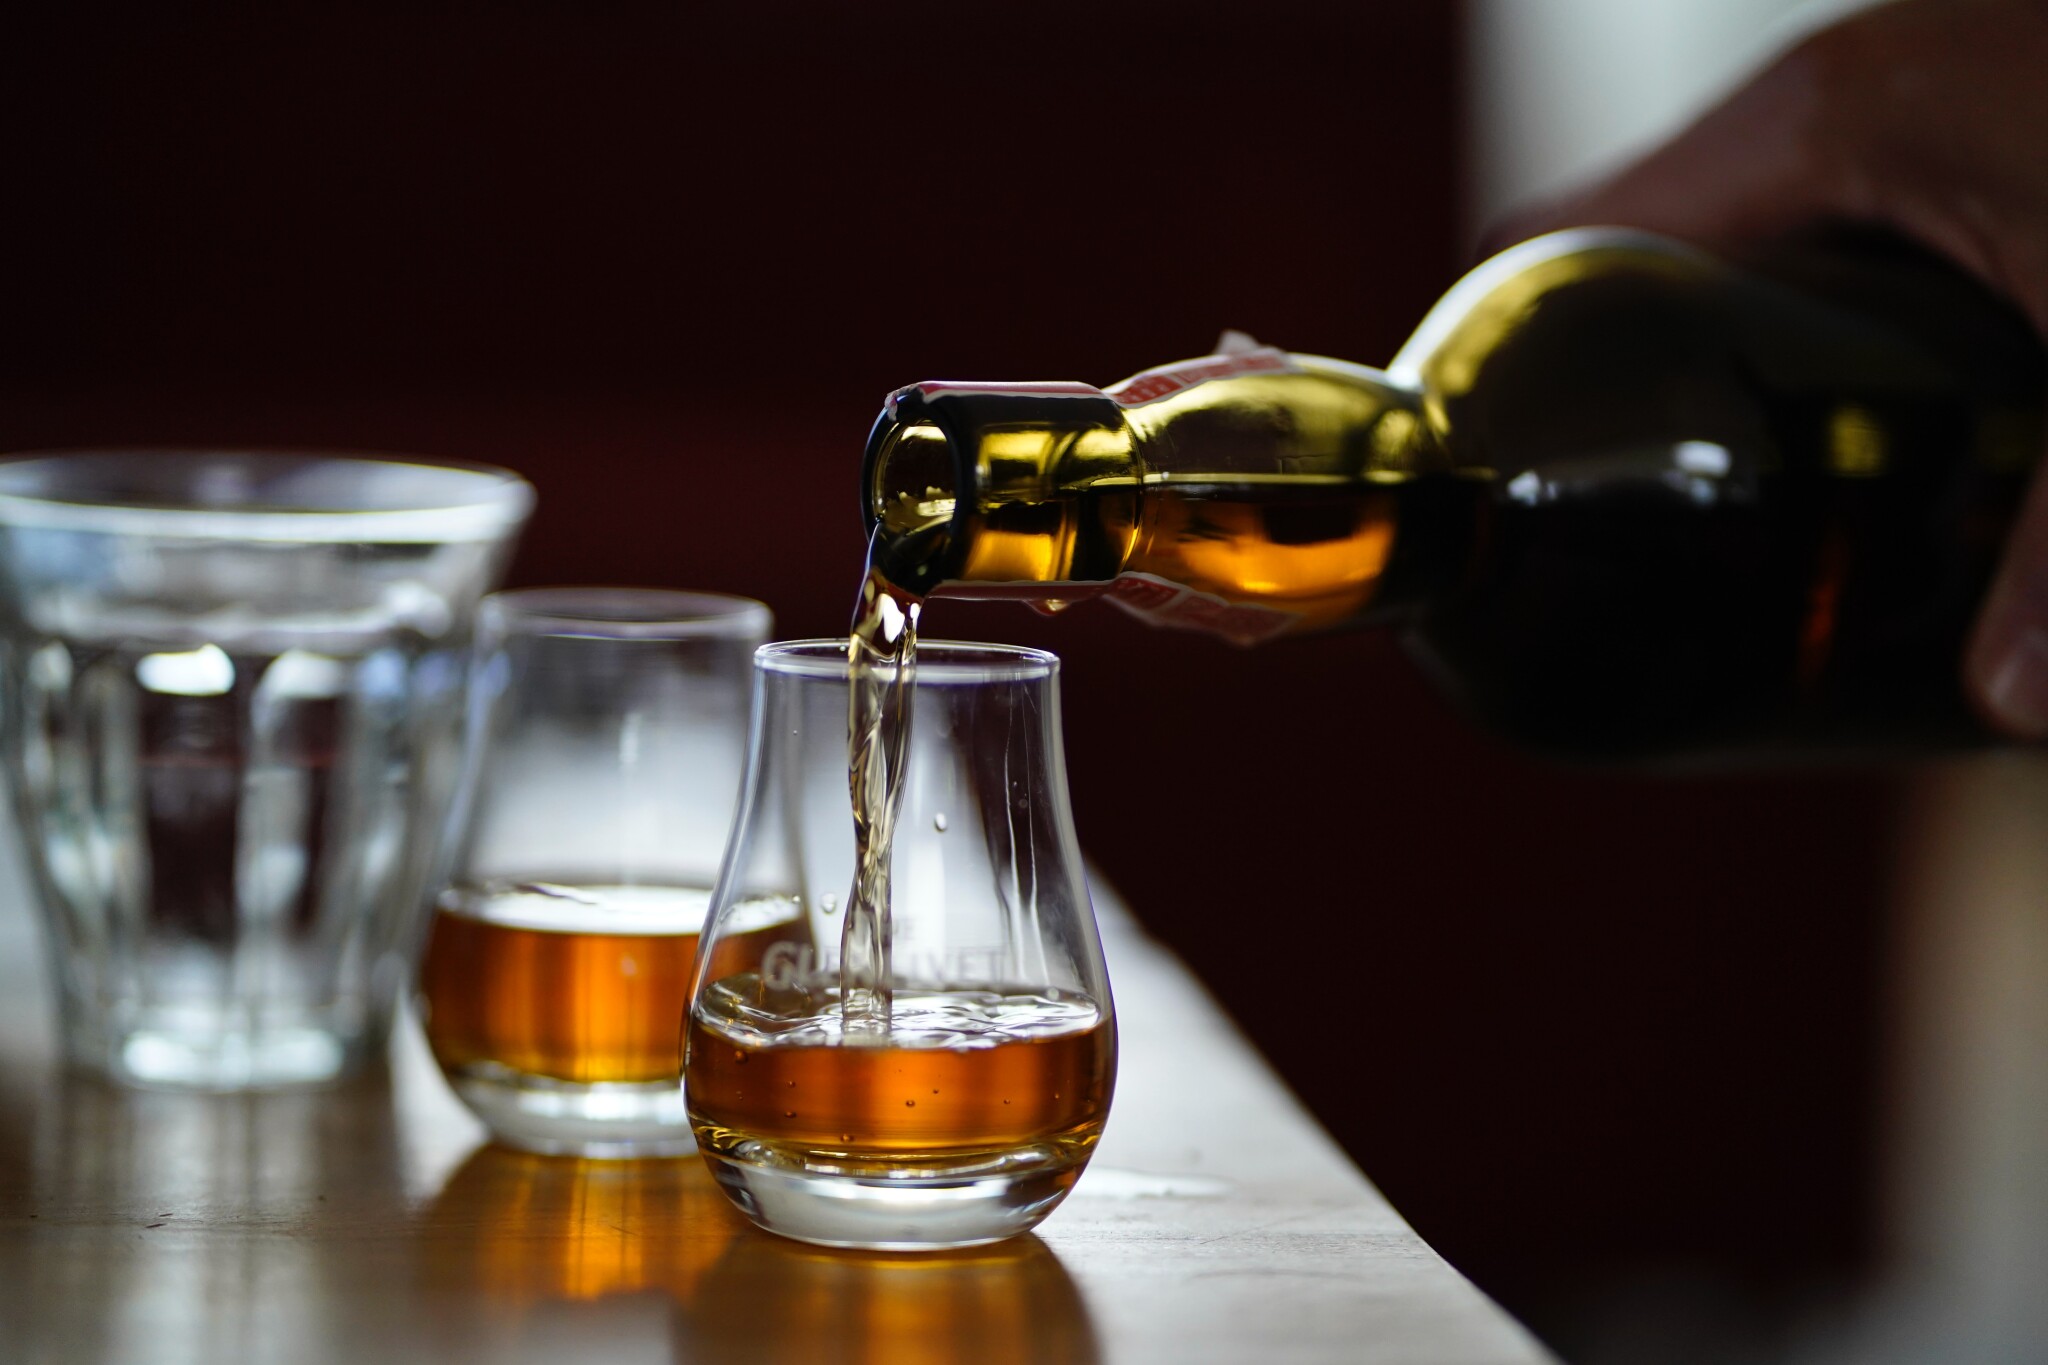 Luxusní whisky láme během krize rekordy v prodeji. Proč ji začít sbírat právě teď?